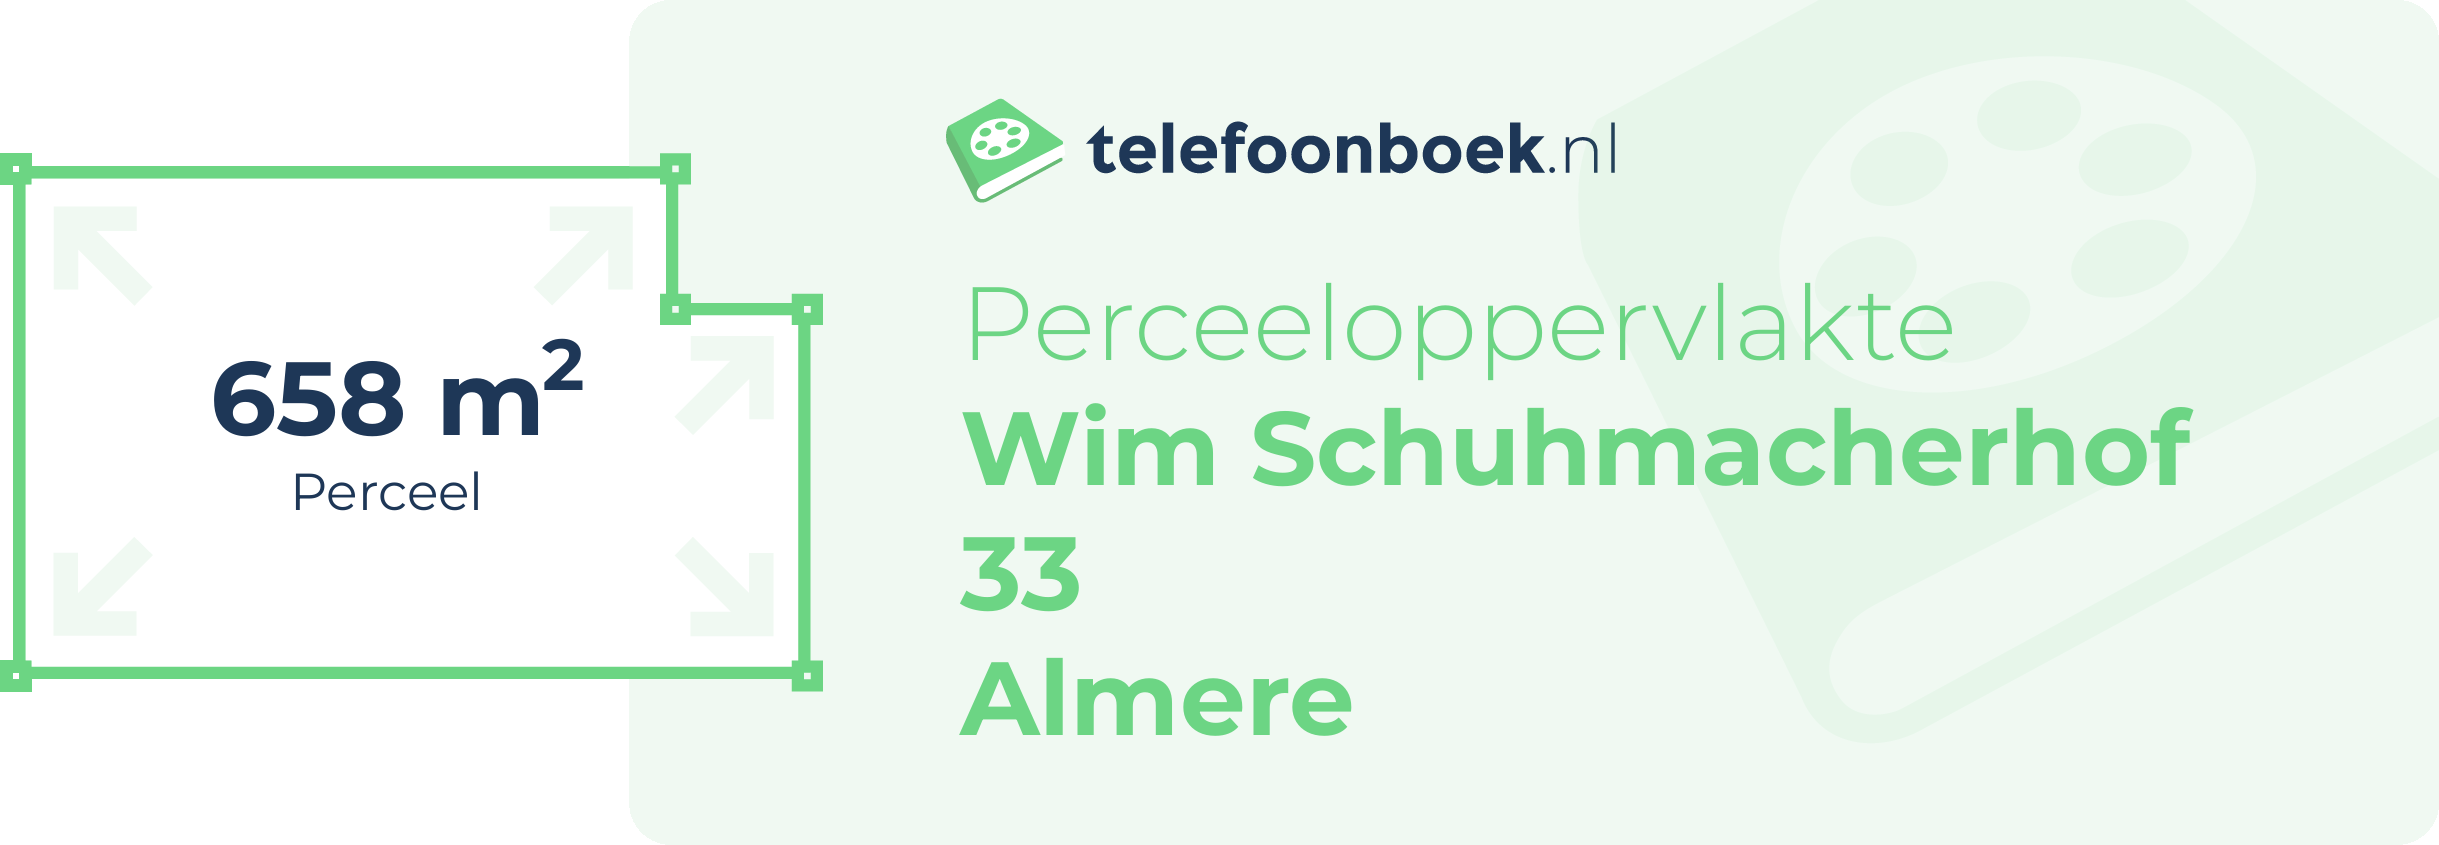 Perceeloppervlakte Wim Schuhmacherhof 33 Almere